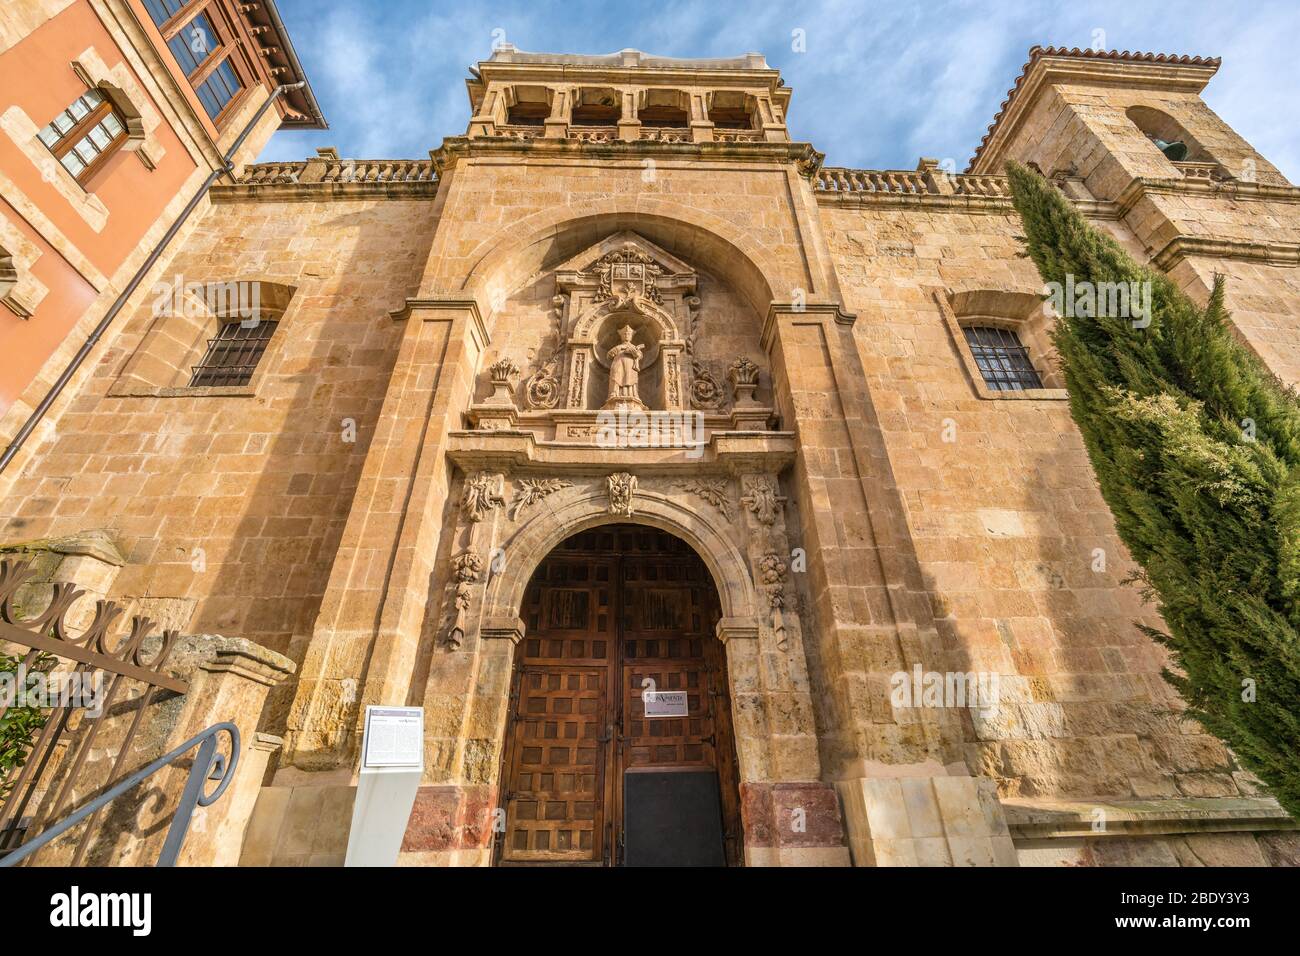 Salamanca, Spanien - 3. Februar 2019 : Außenansicht der Kirche San Millan. Gebäude im romanischen Stil. Beherbergt historisches Museum (Monumenta Salamanca) Stockfoto